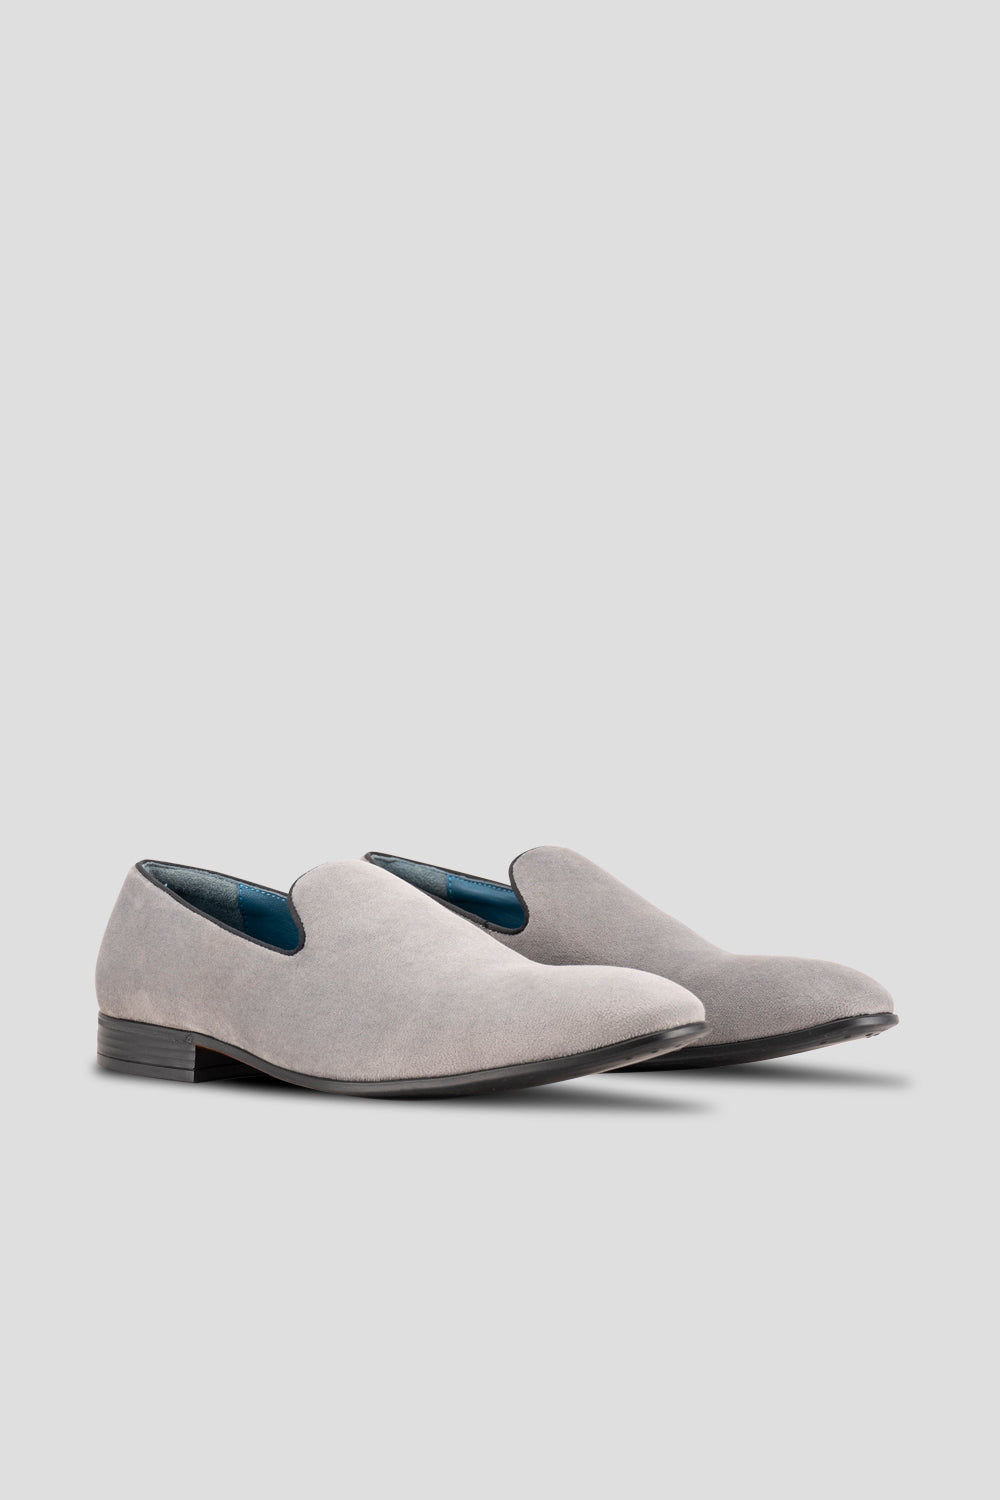 Alfie Grey velvet slippers loafer